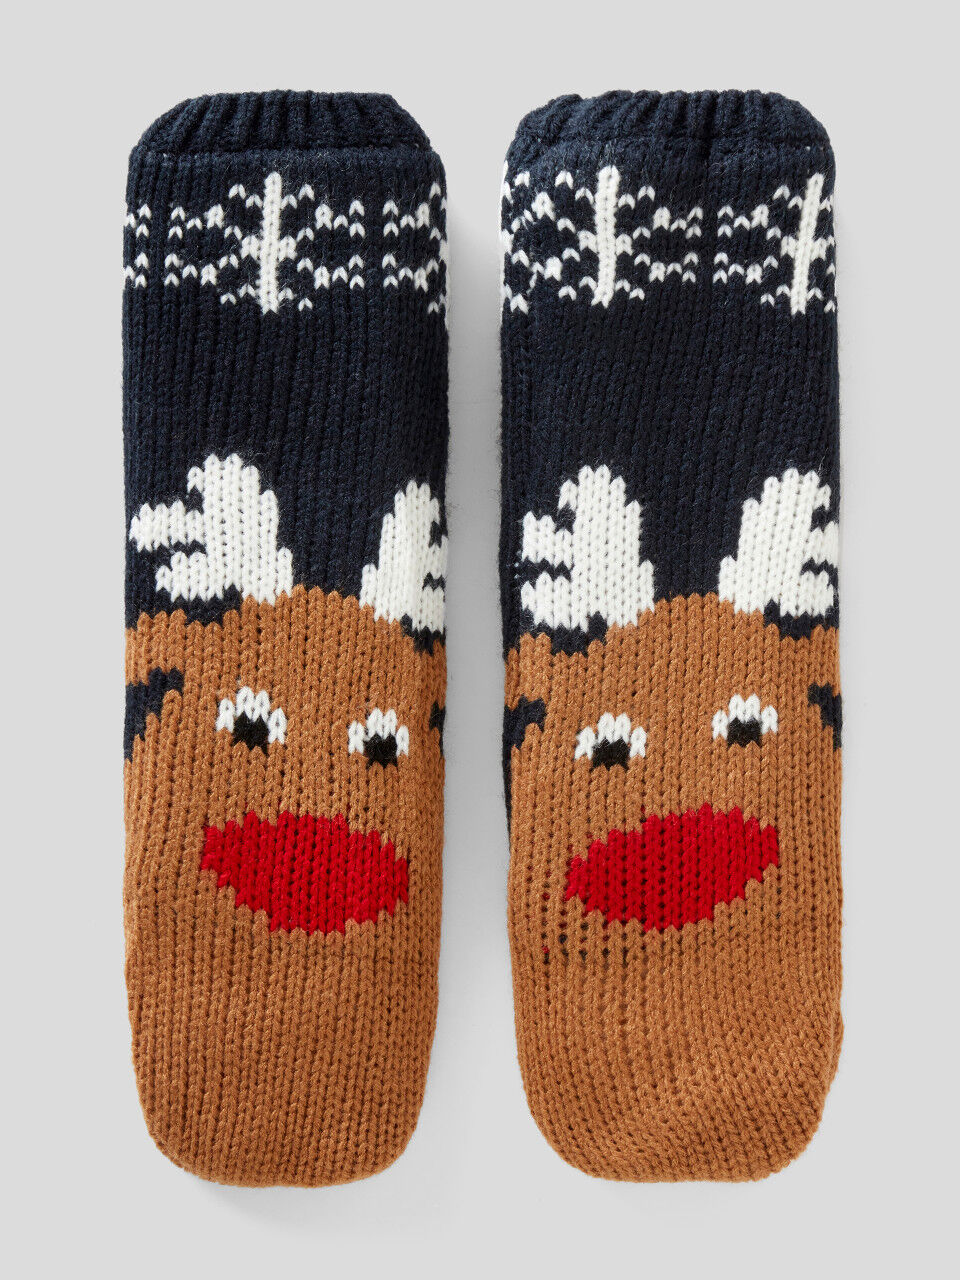 Knit reindeer socks